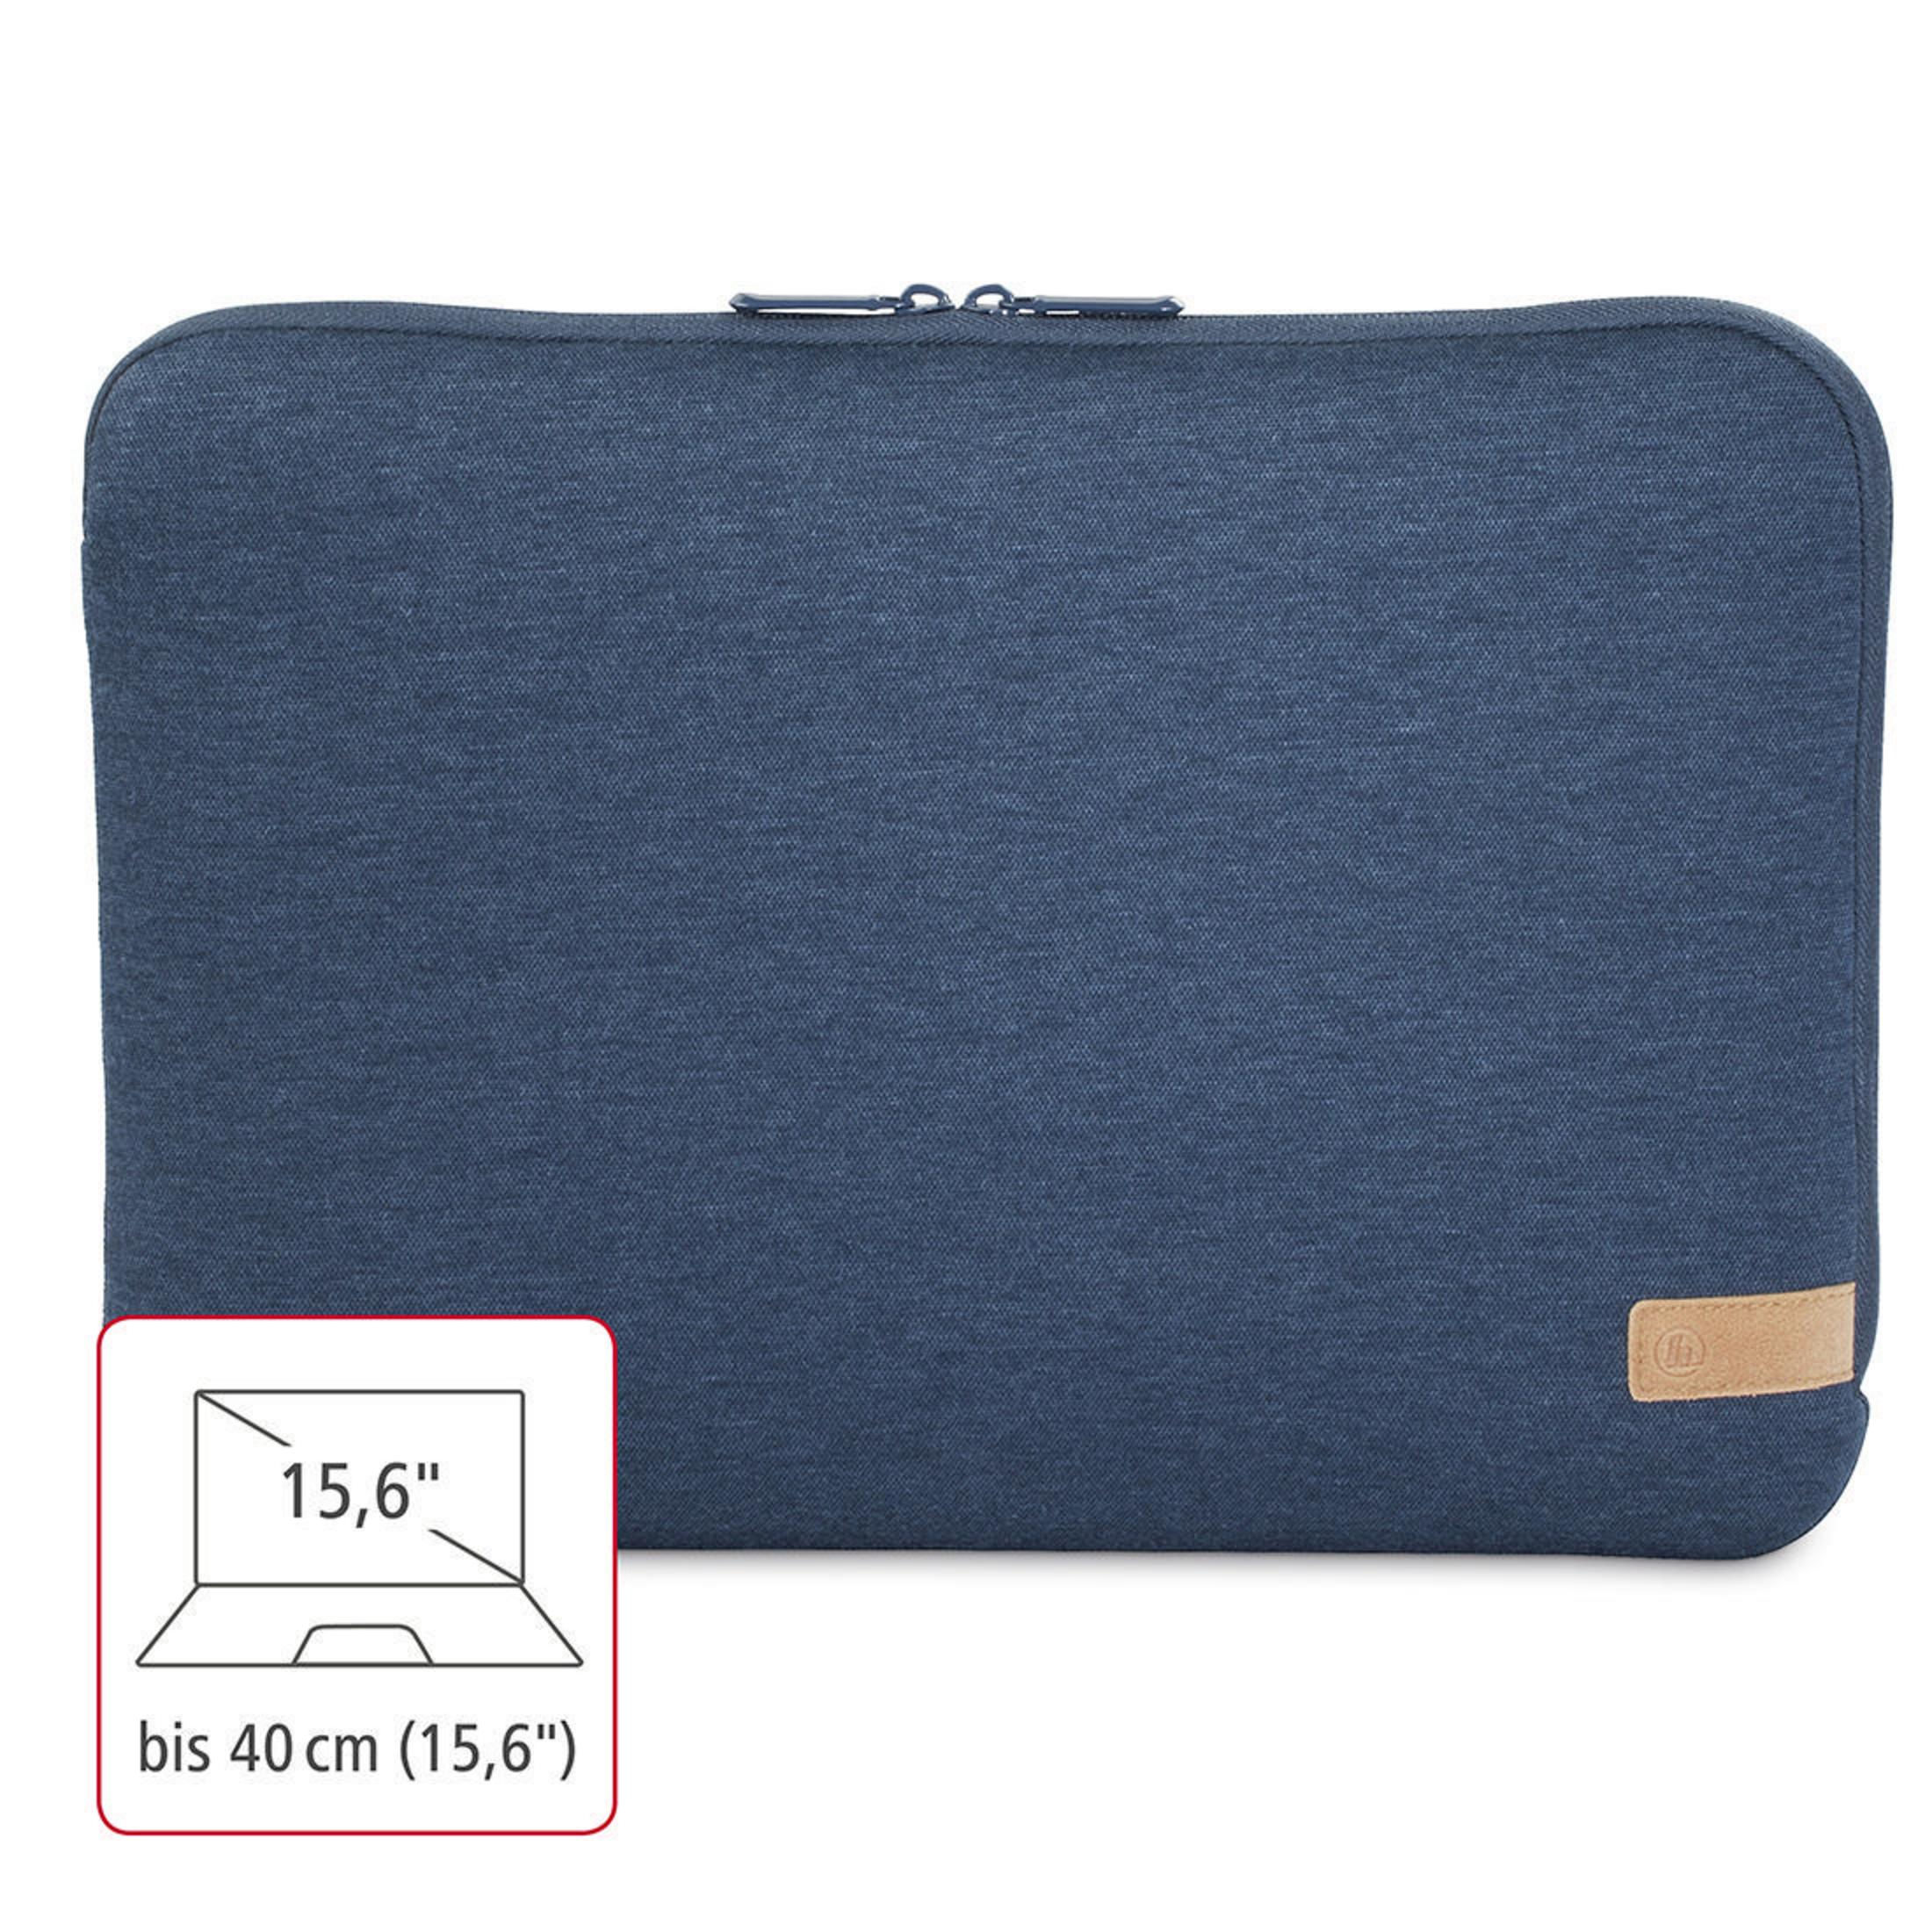 HAMA 101811 NB-SLE JERSEY 15.6 Jersey, BLAU Universal Sleeve Blau Notebooktasche für